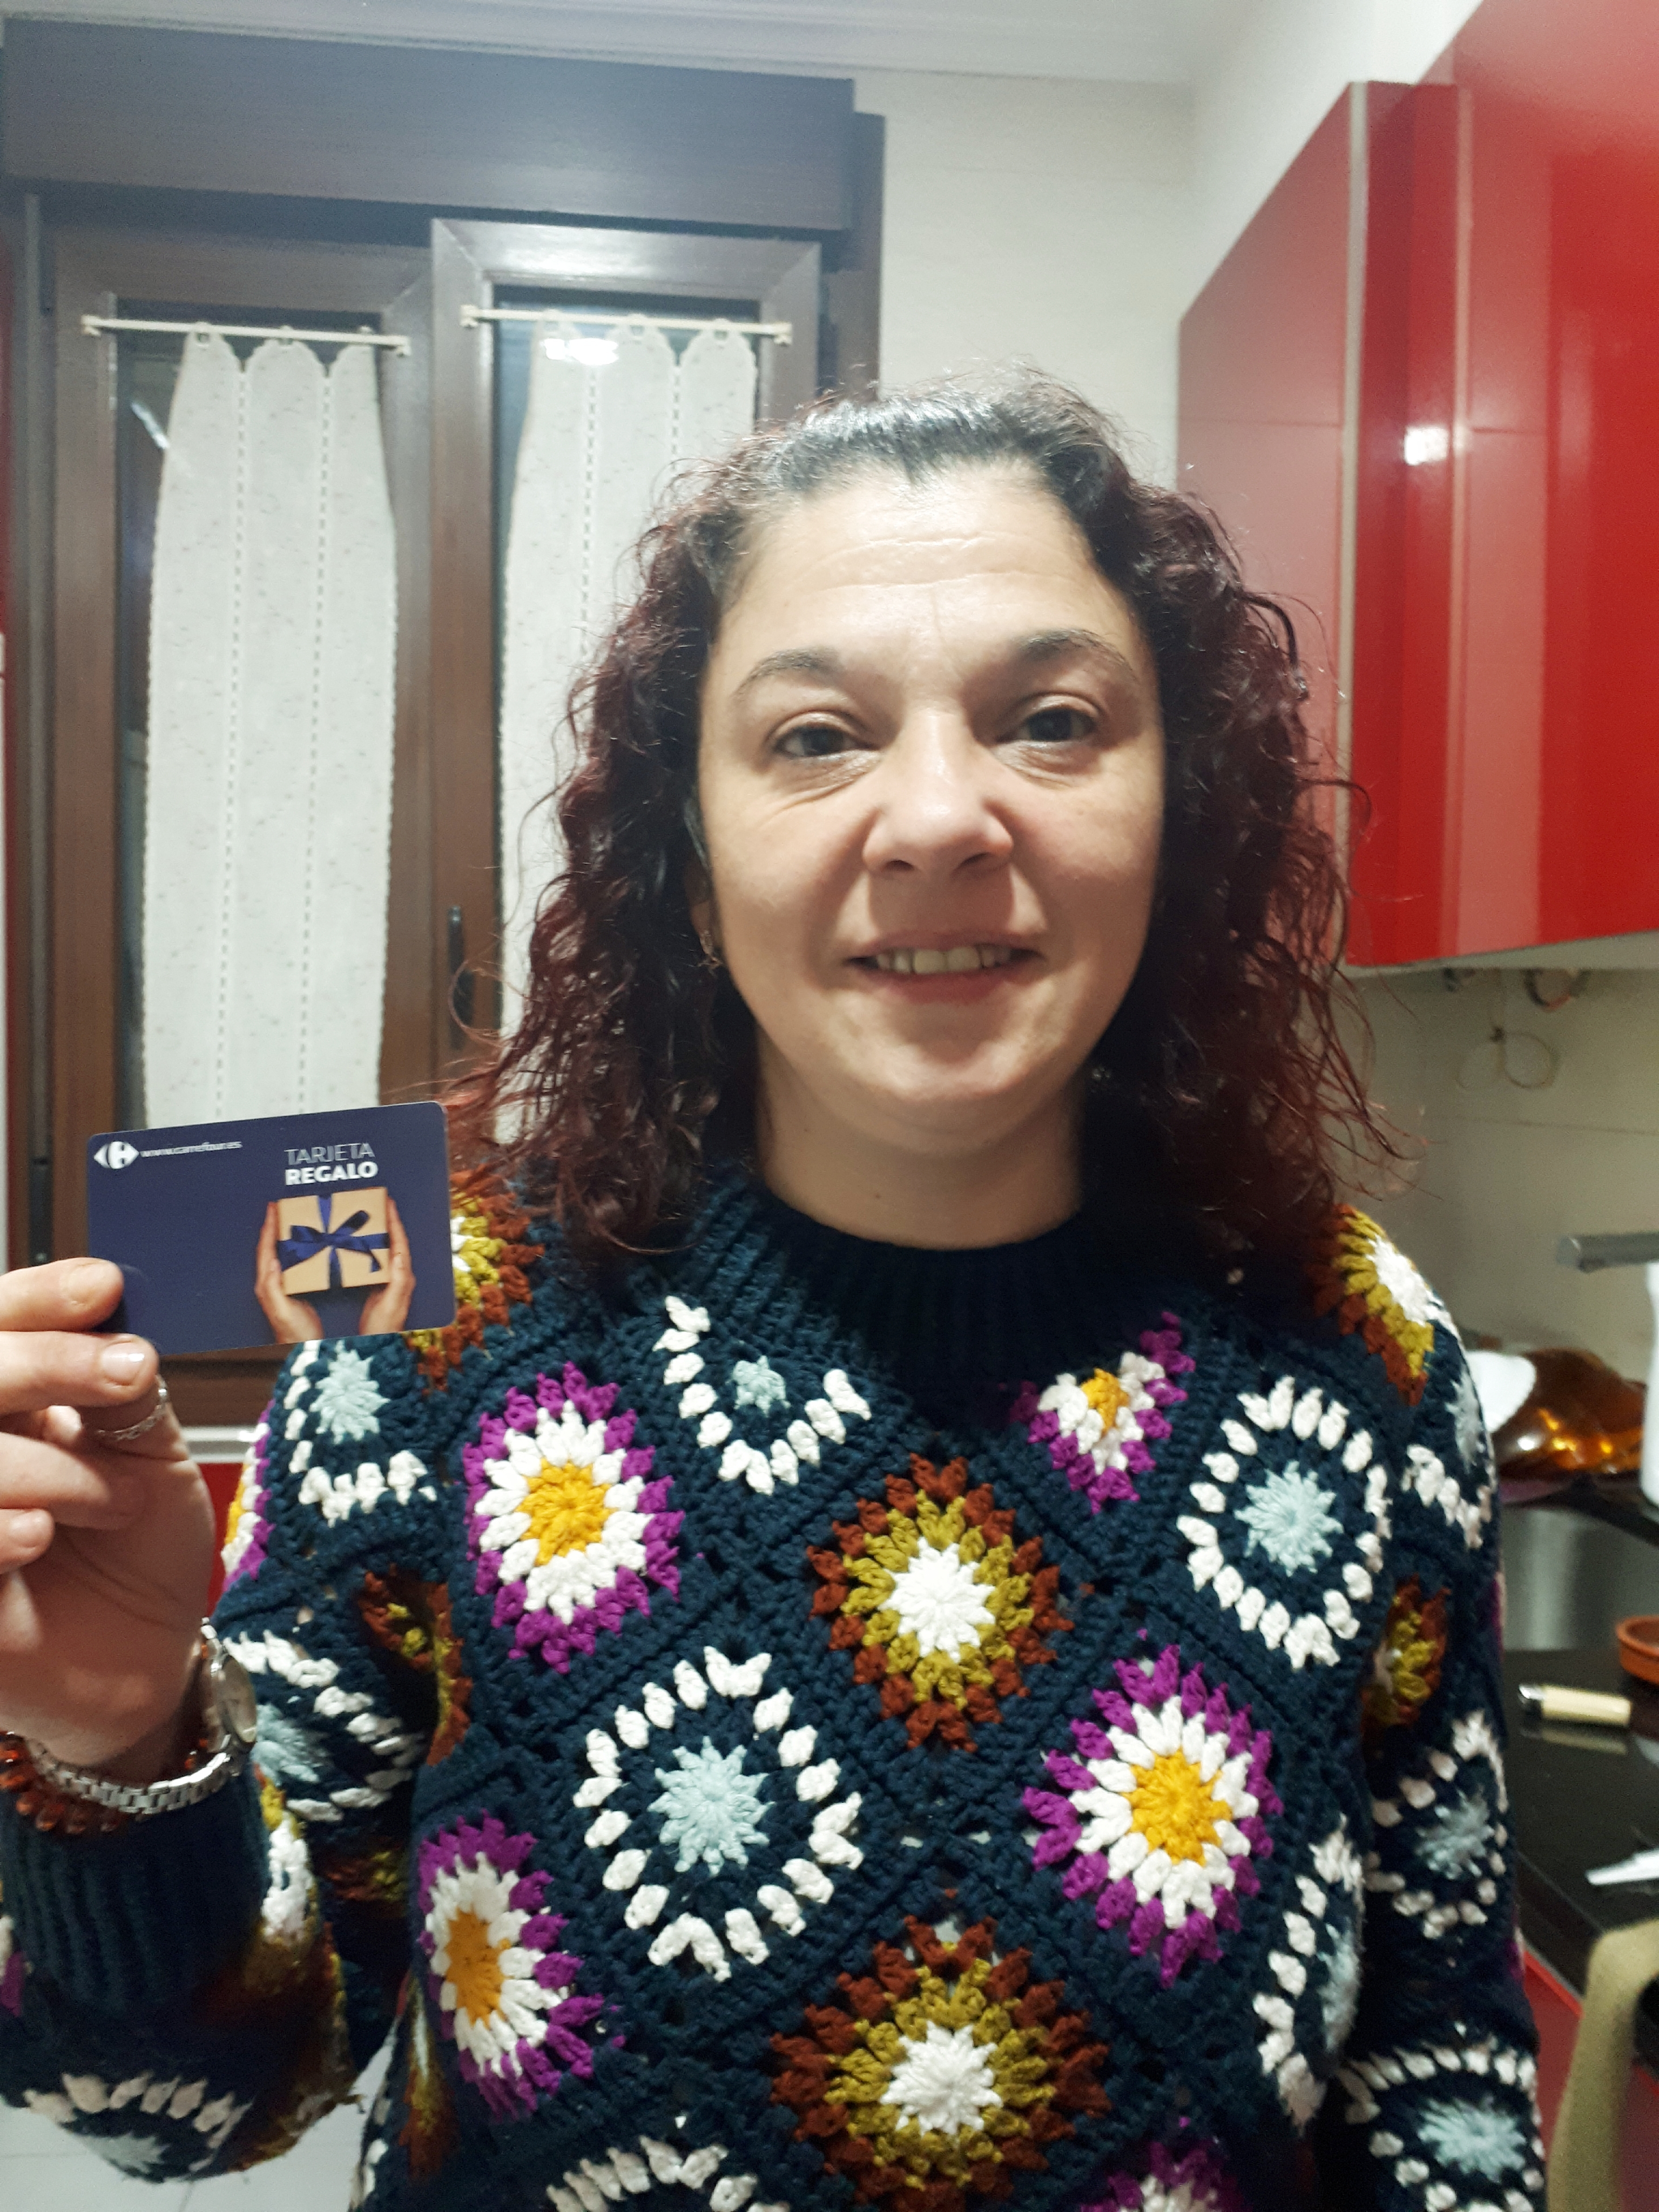 Lorena – BILBAO Ganadora de una tarjeta regalo de 995€